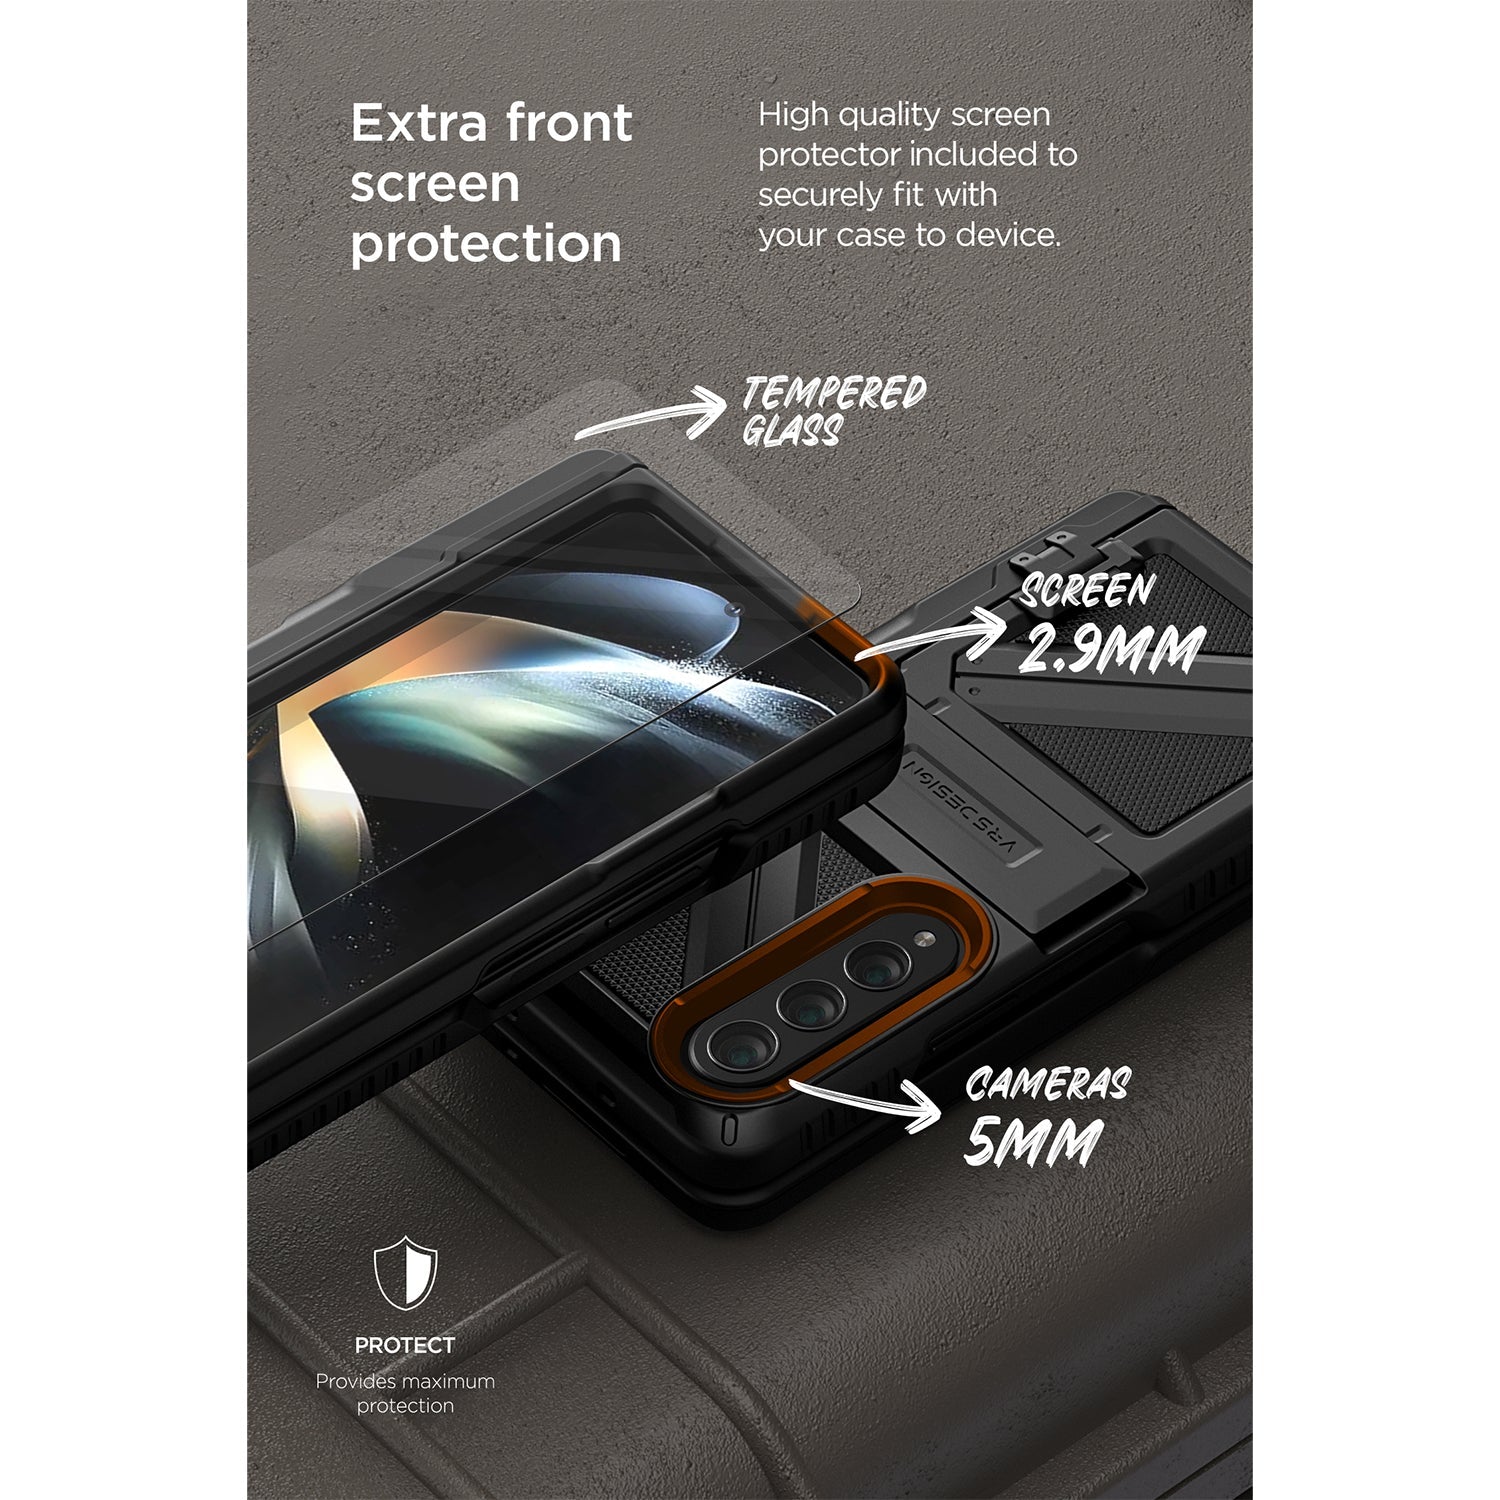 VRS Design Terra Guard Active Ultimate S Case for Samsung Galaxy Z Fold 4 Samsung Case VRS Design 